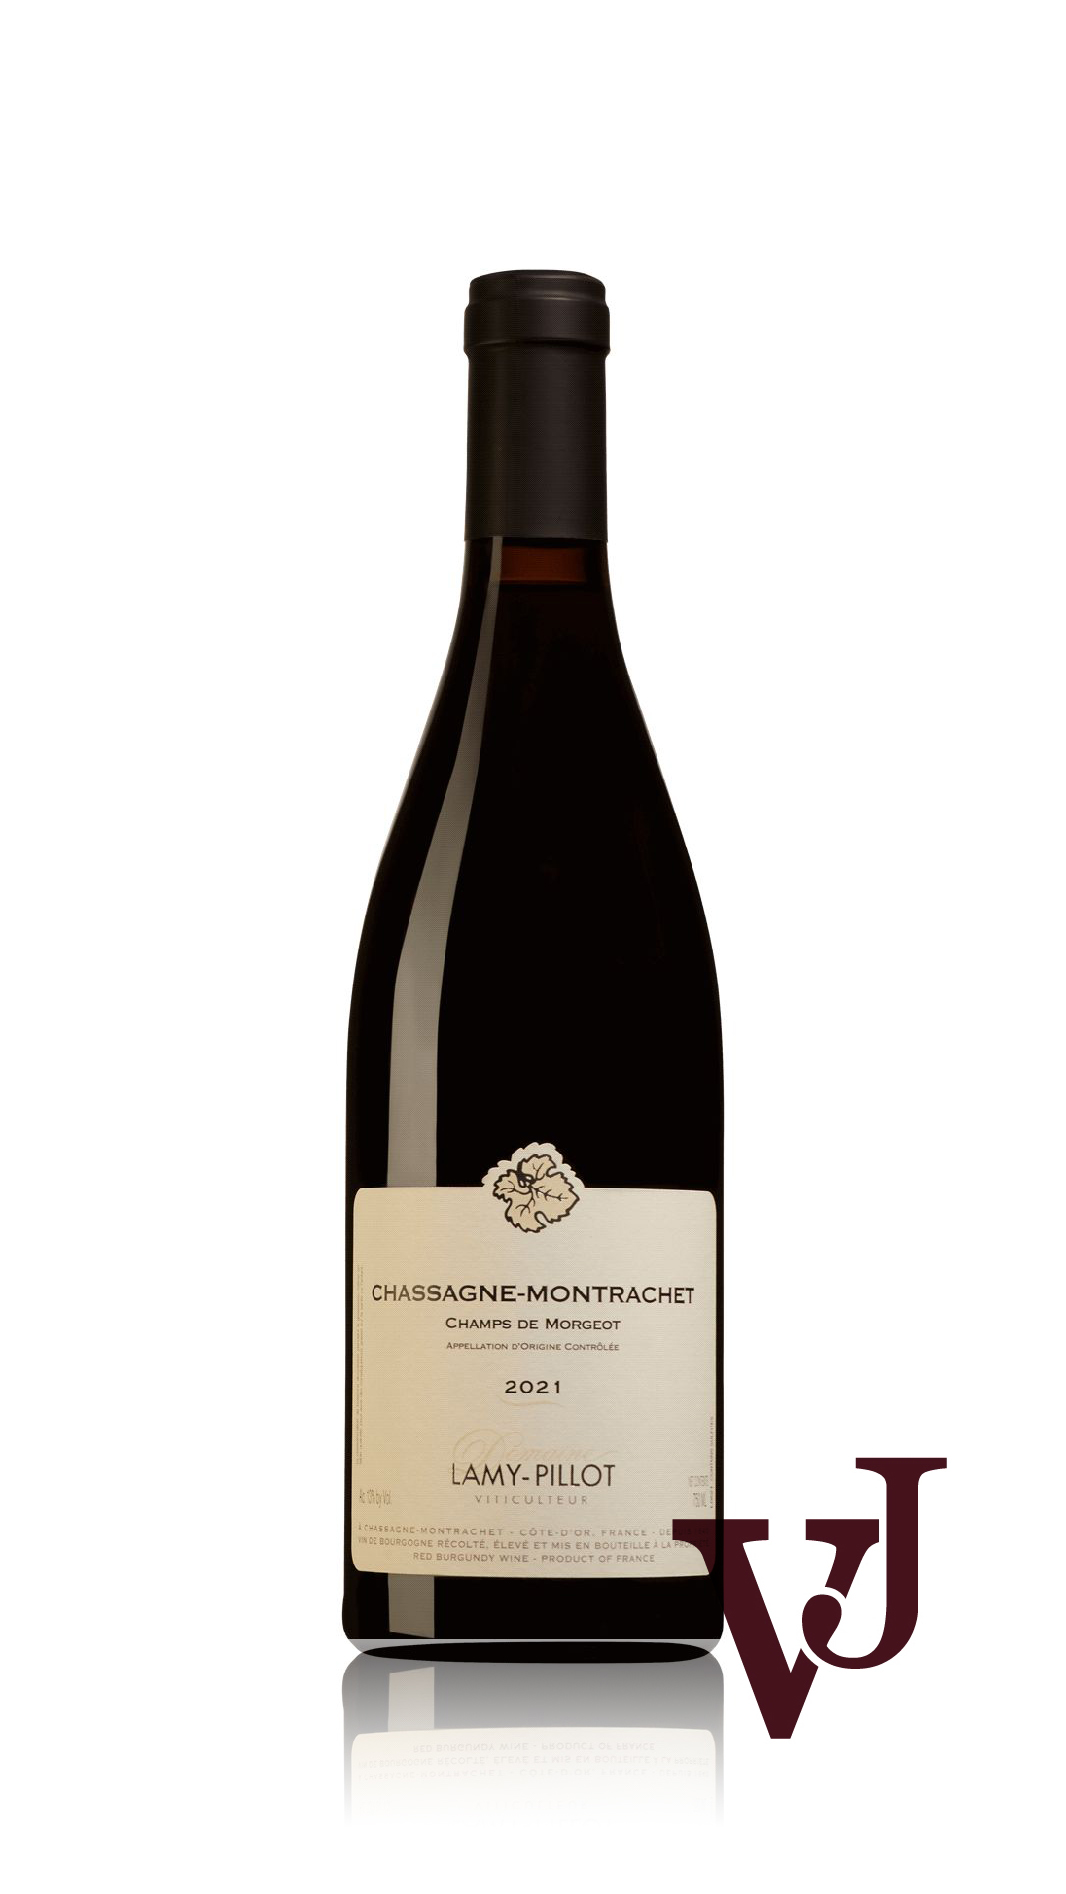 Rött Vin - Chassagne-Montrachet Champs de Morgeot Domaine Lamy-Pillot 2021 artikel nummer 9457501 från producenten Domaine Lamy-Pillot från området Frankrike